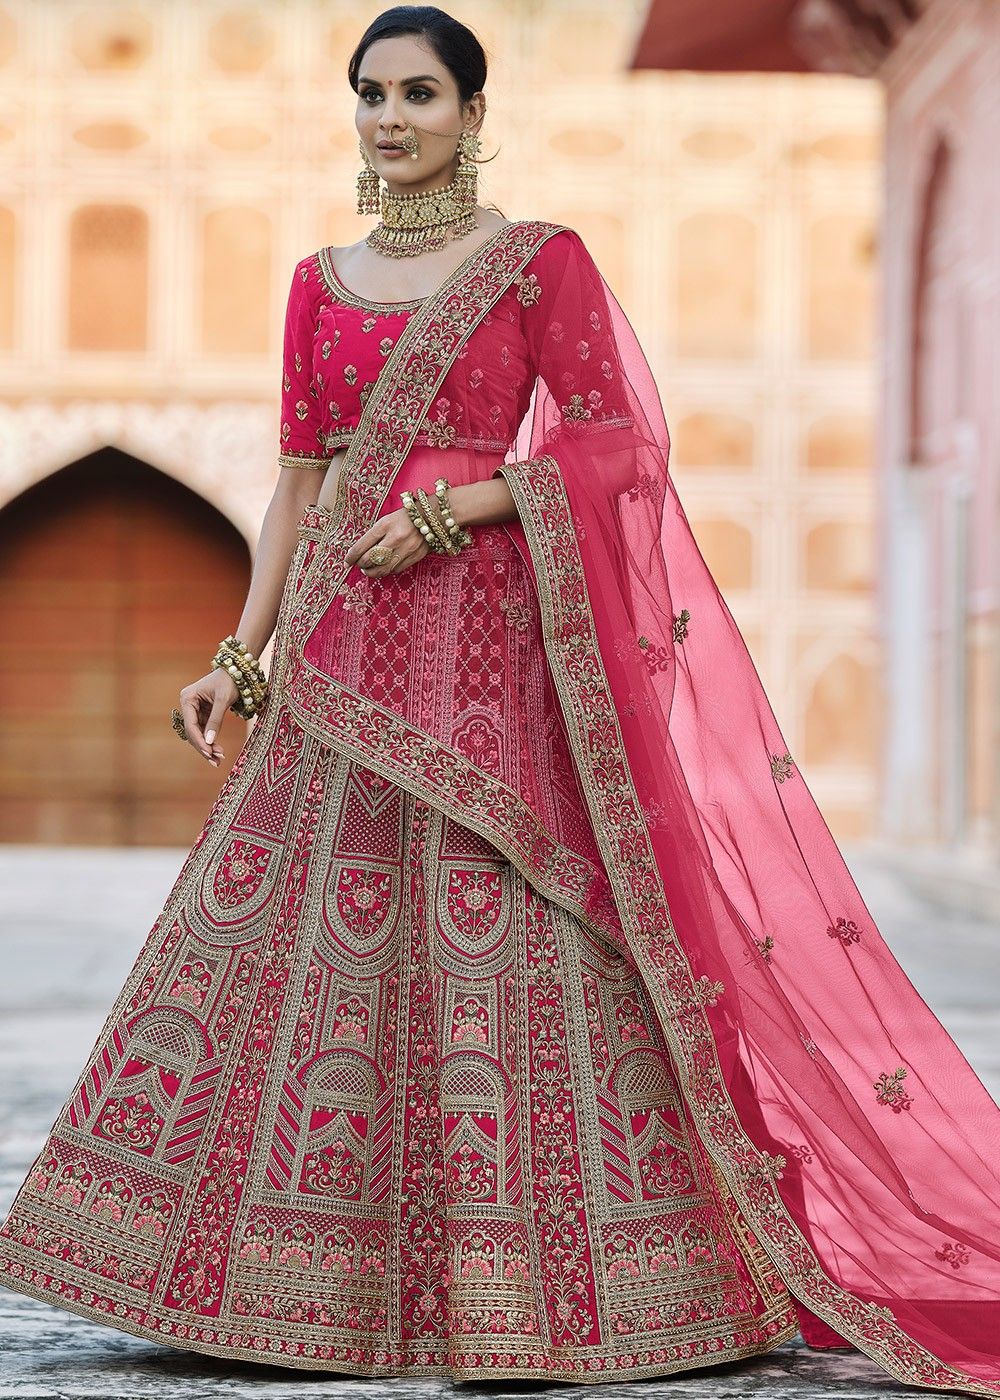 Buy astha bridal Semi-Stitched Gray & Pink Two Layers Ruffle Lehenga Choli  at Amazon.in